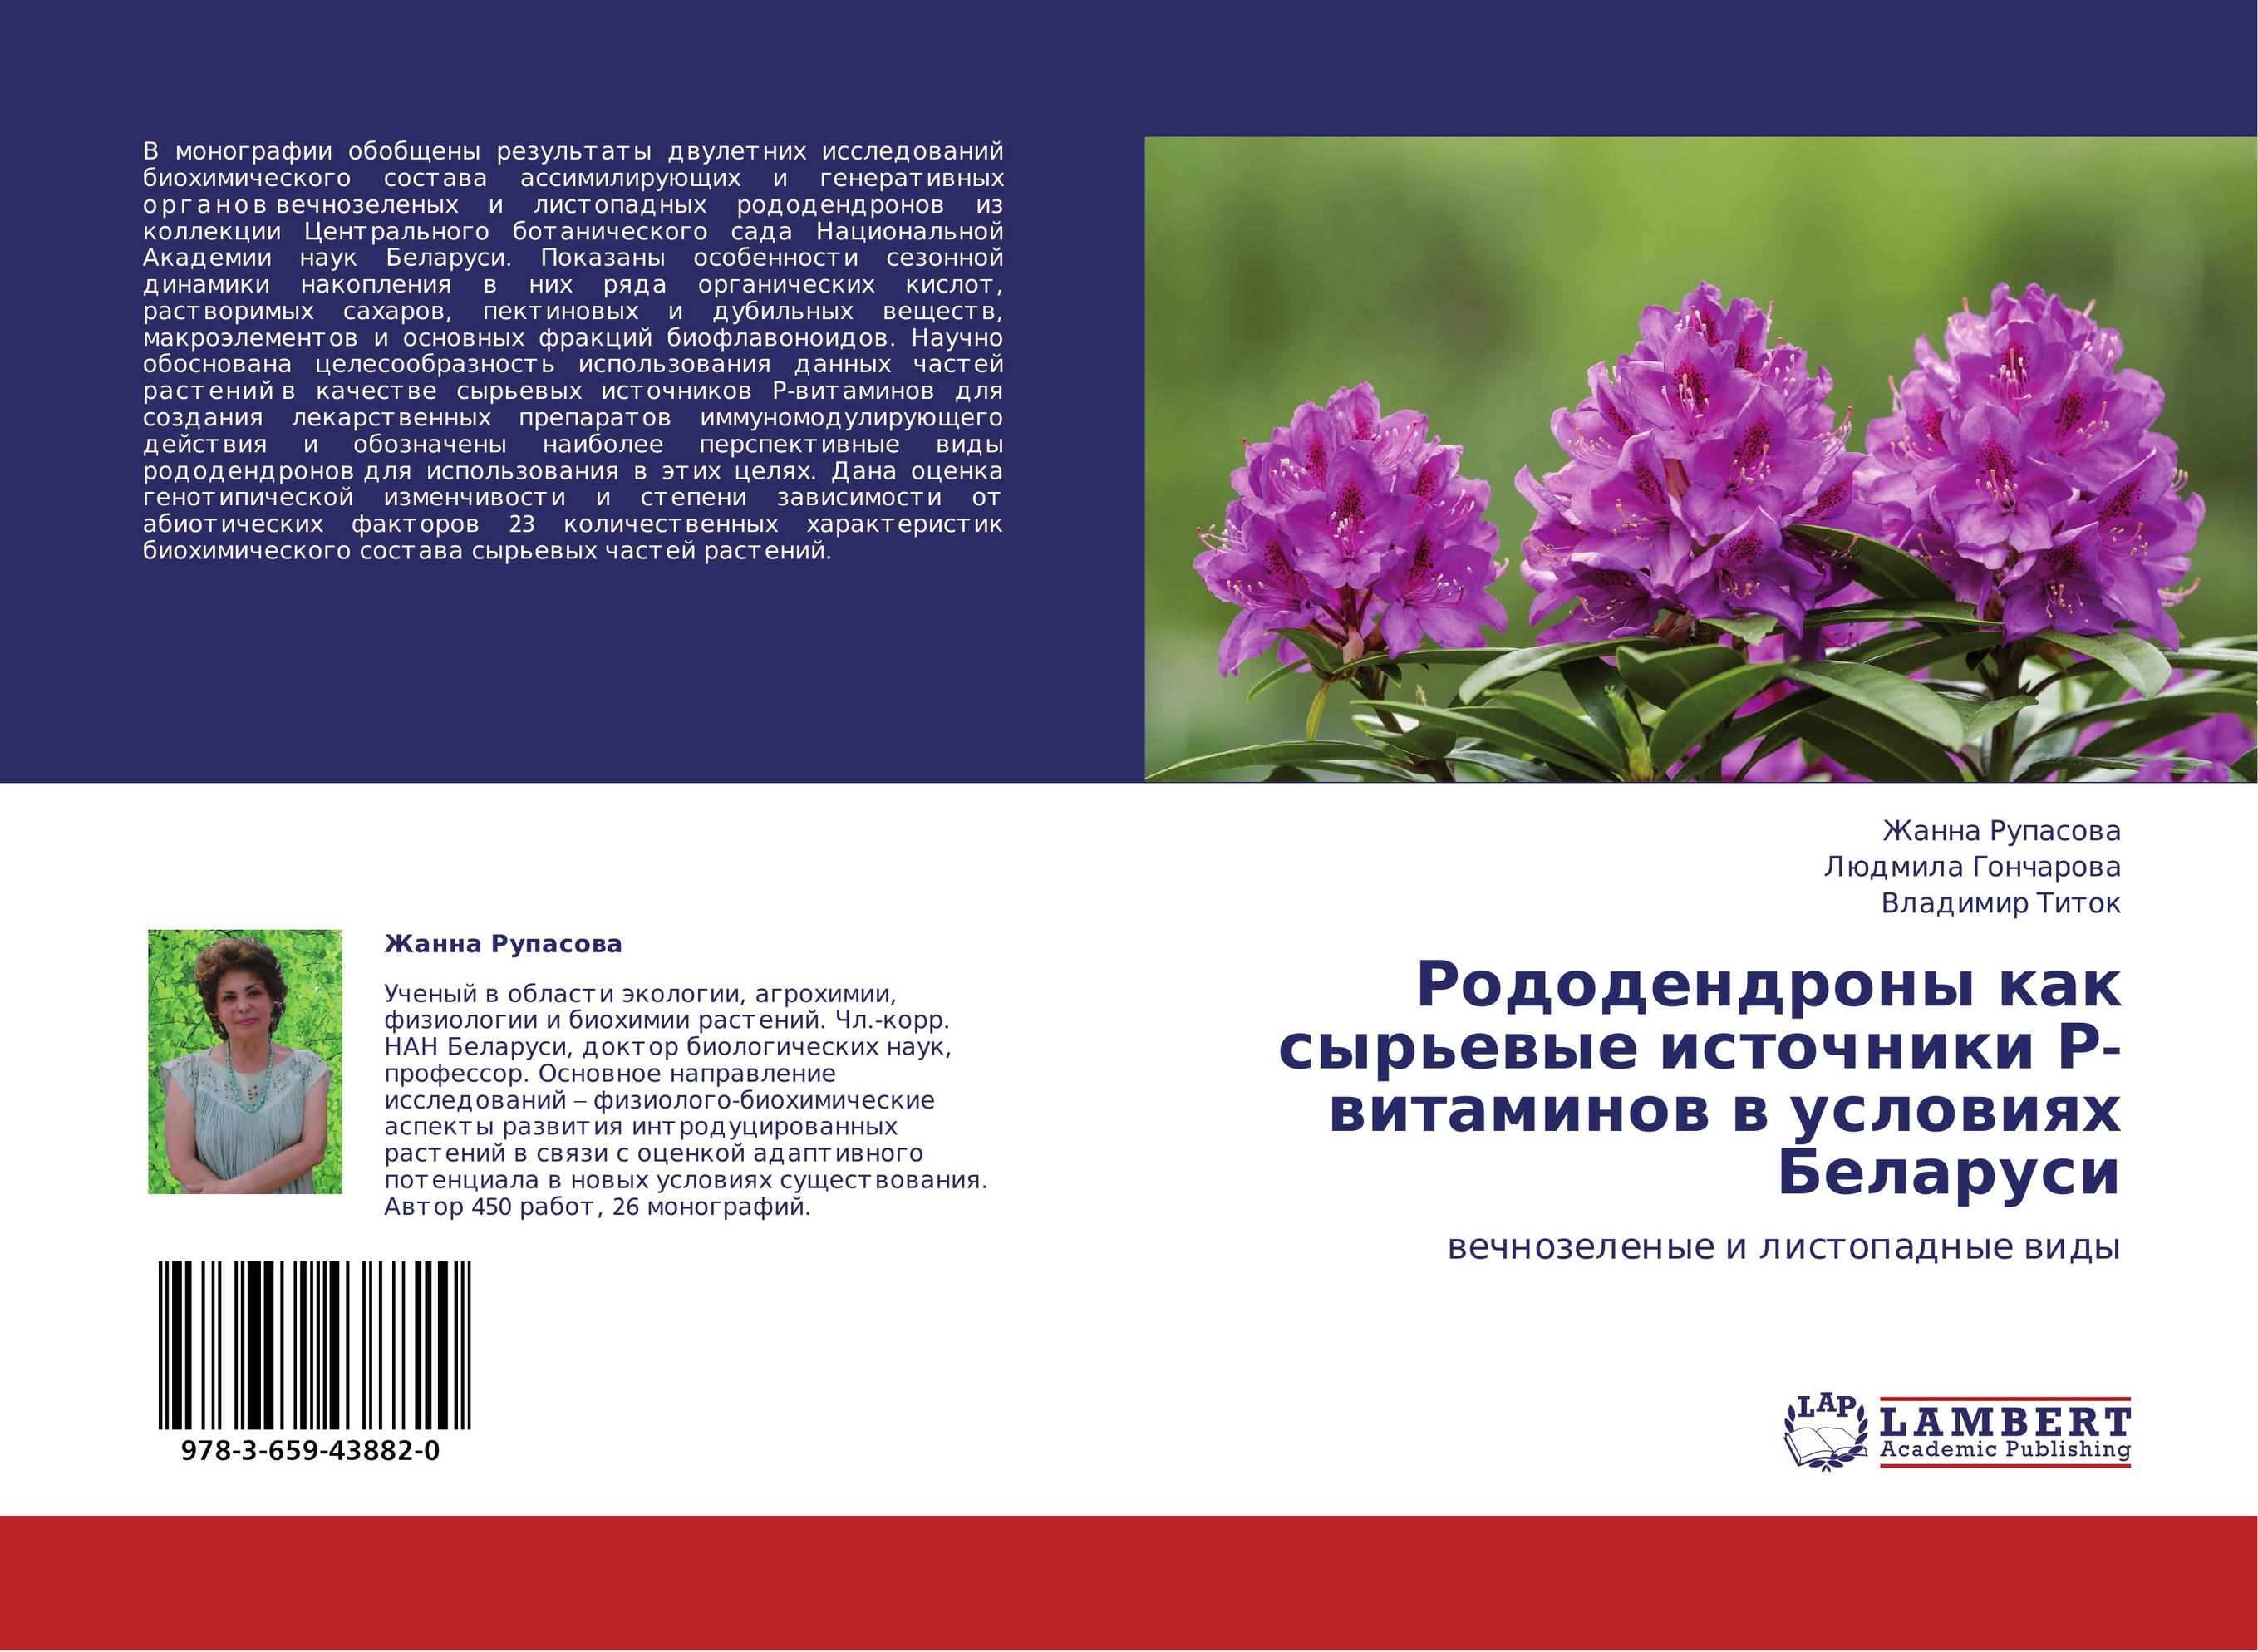 
        Рододендроны как сырьевые источники Р-витаминов в условиях Беларуси. Вечнозеленые и листопадные виды.
      